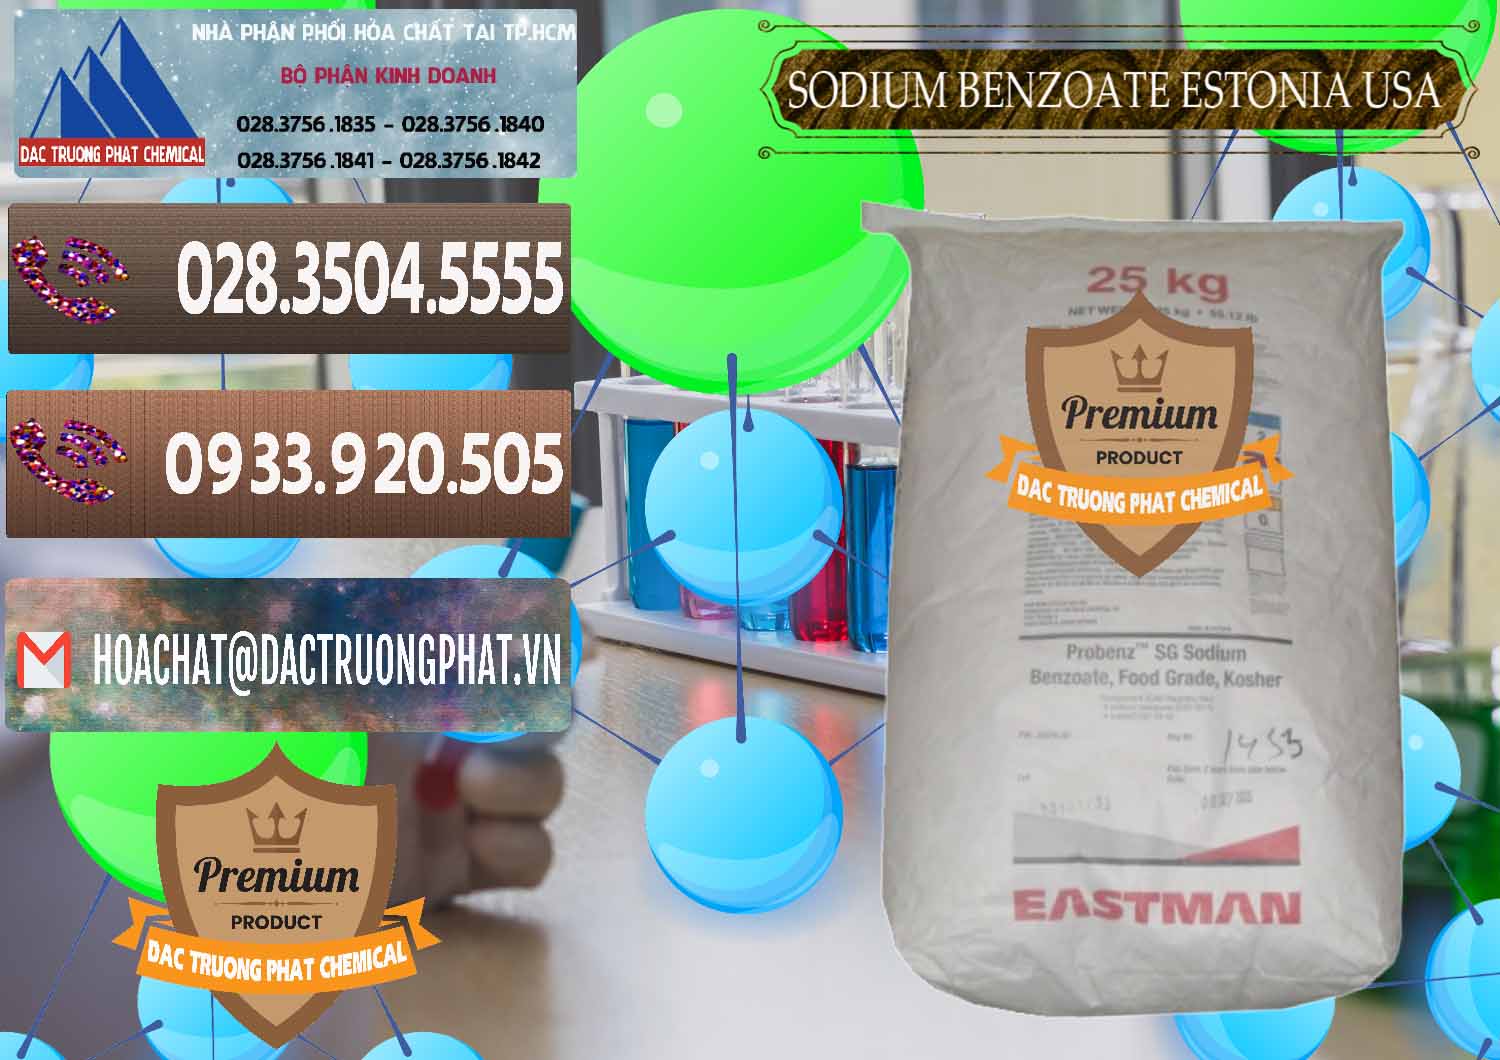 Nơi cung ứng _ bán Sodium Benzoate - Mốc Bột Estonia Mỹ USA - 0468 - Kinh doanh & phân phối hóa chất tại TP.HCM - hoachatviet.net